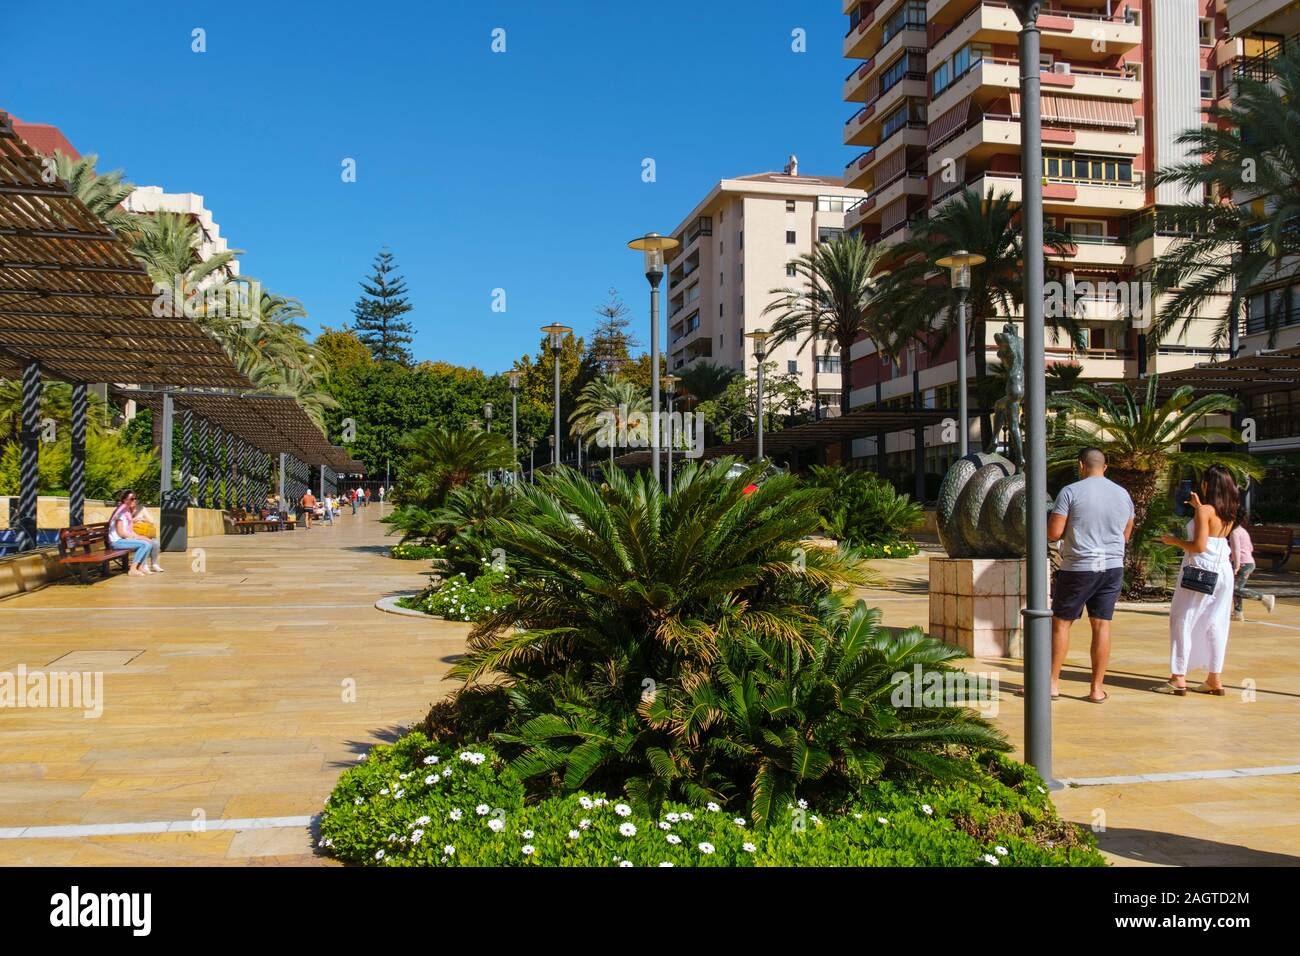 Dali modern art sculpture, Avenida del Mar Marbella. Malaga province Costa del Sol. Andalusia Southern Spain, Europe Stock Photo